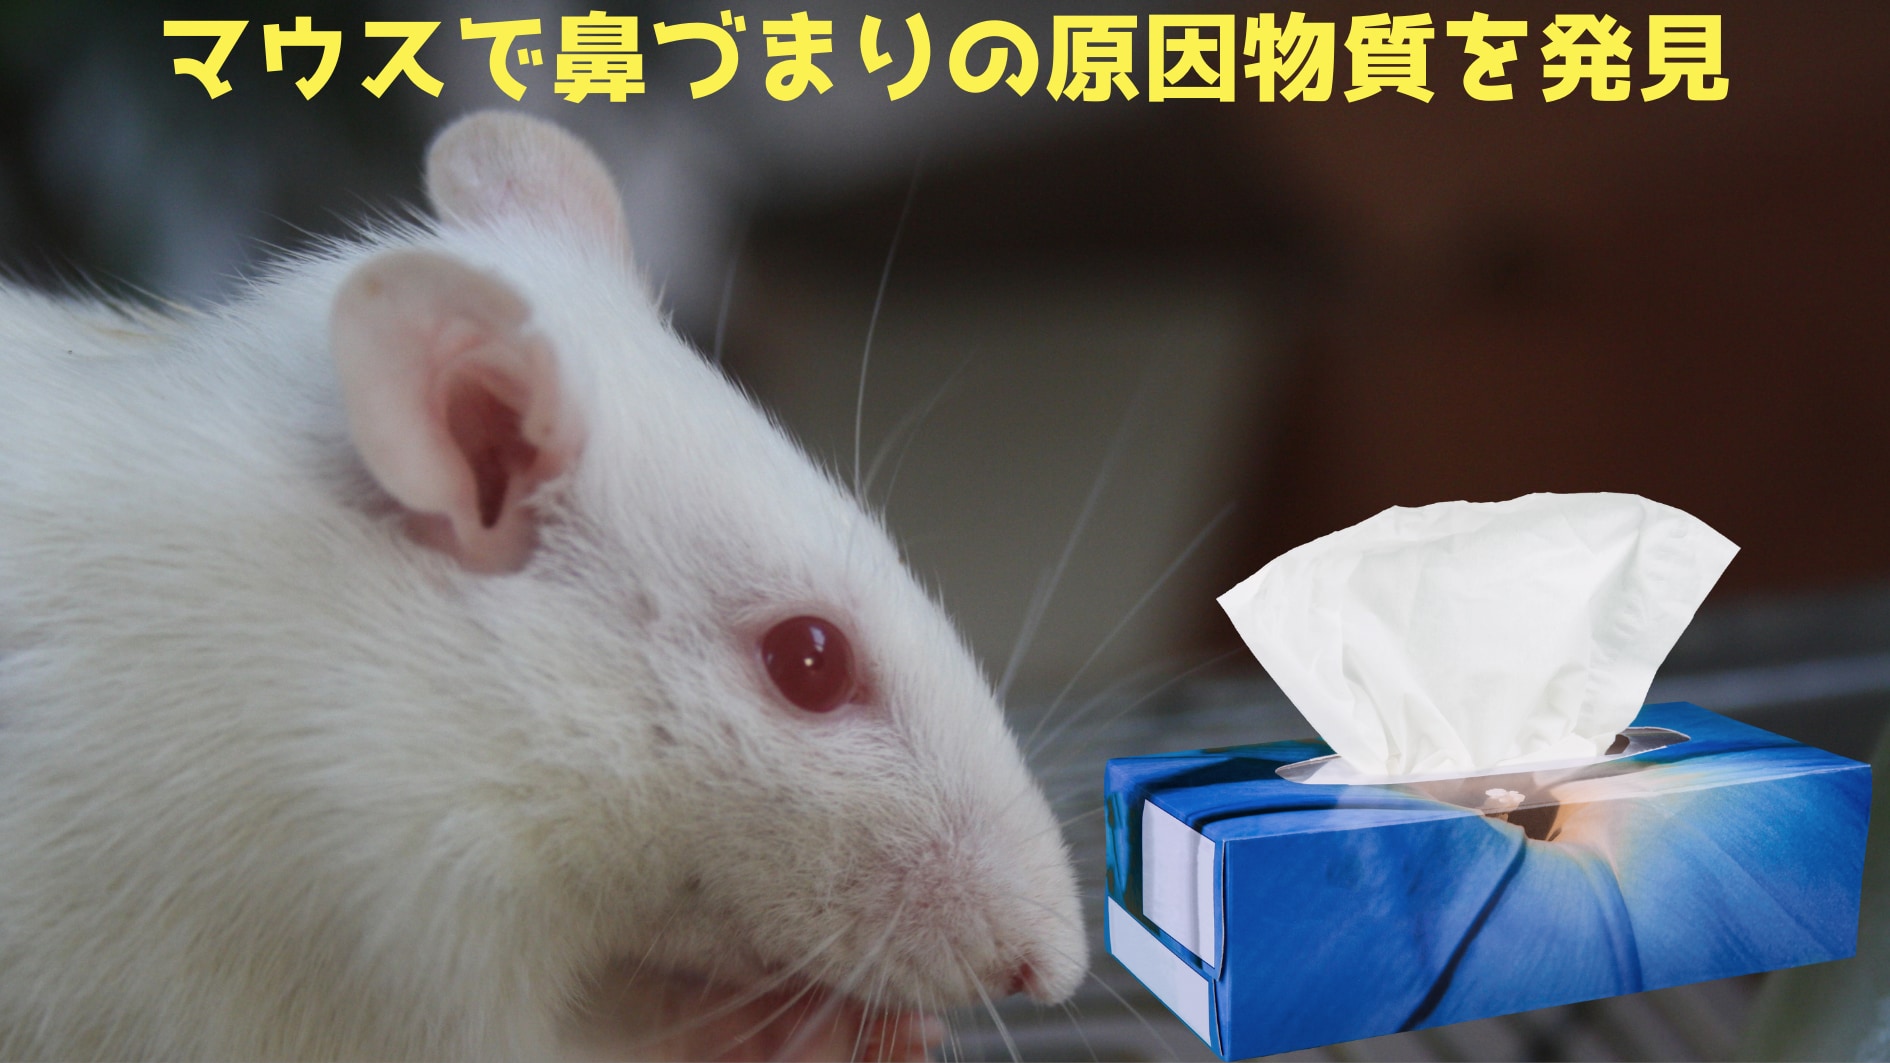 鼻づまりの原因物質をマウスで発見！　画期的治療法の開発に期待